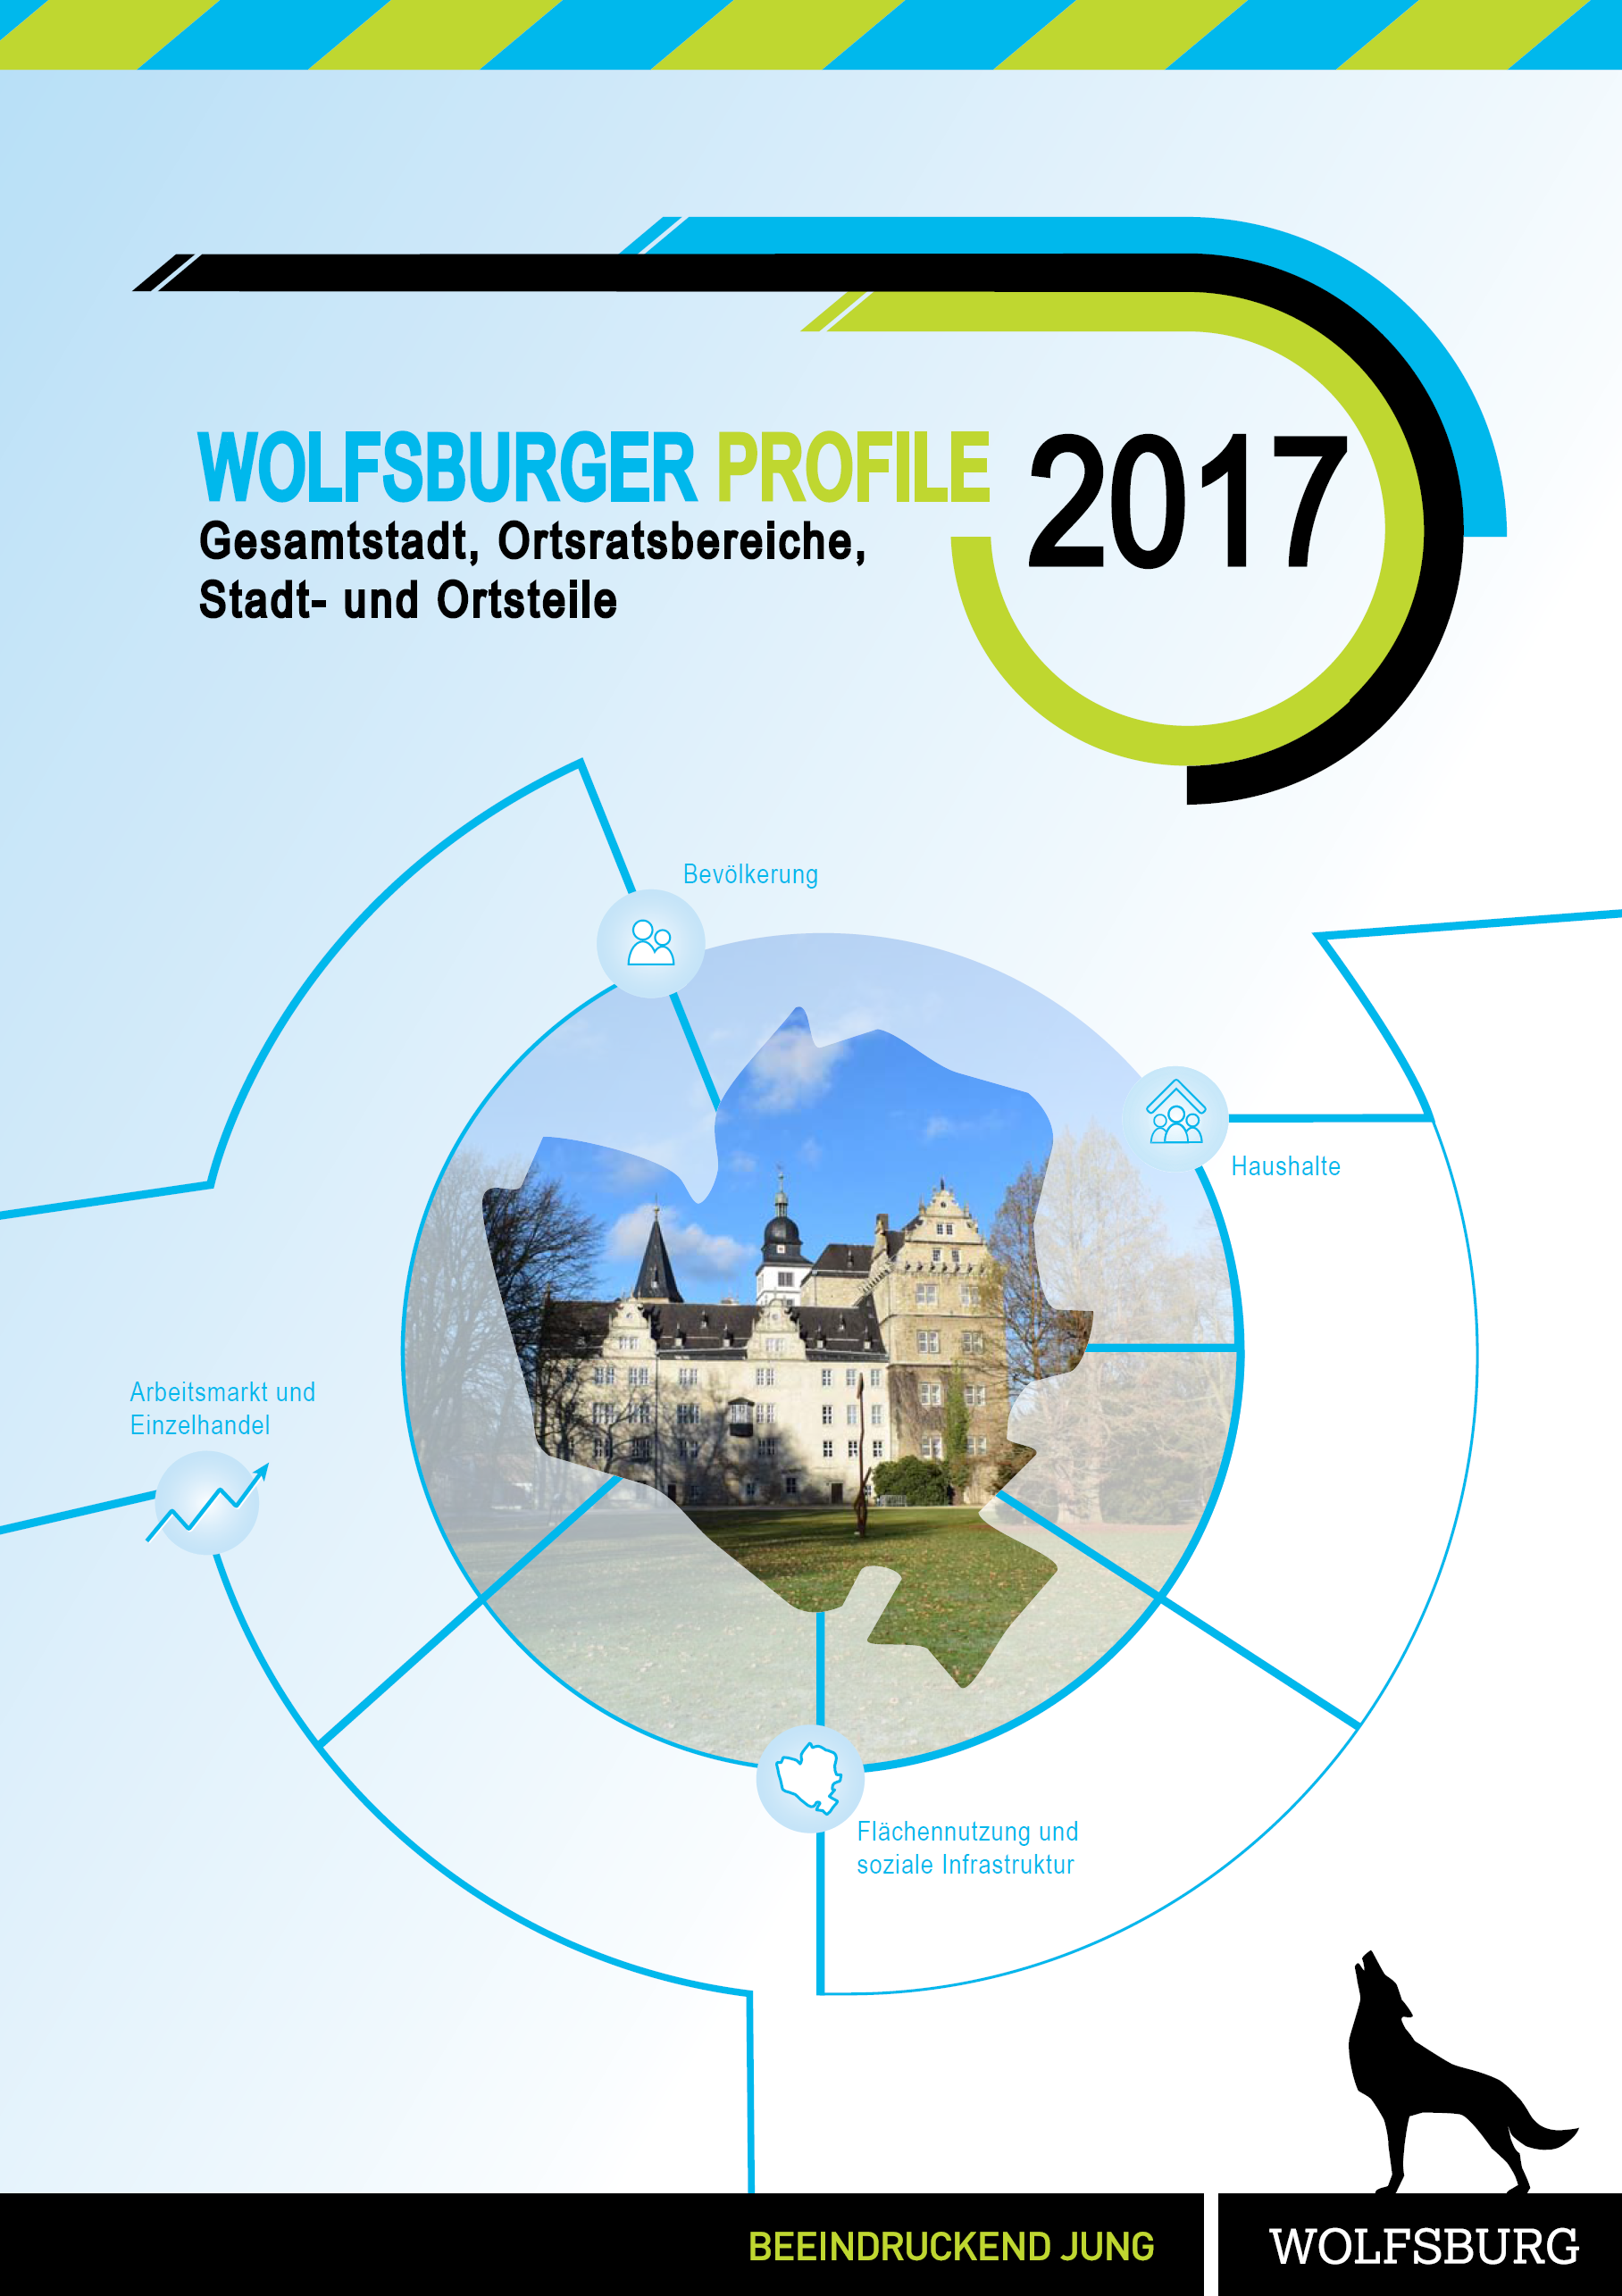 Titelbild der Publikation "Wolfsburger Profile 2017"